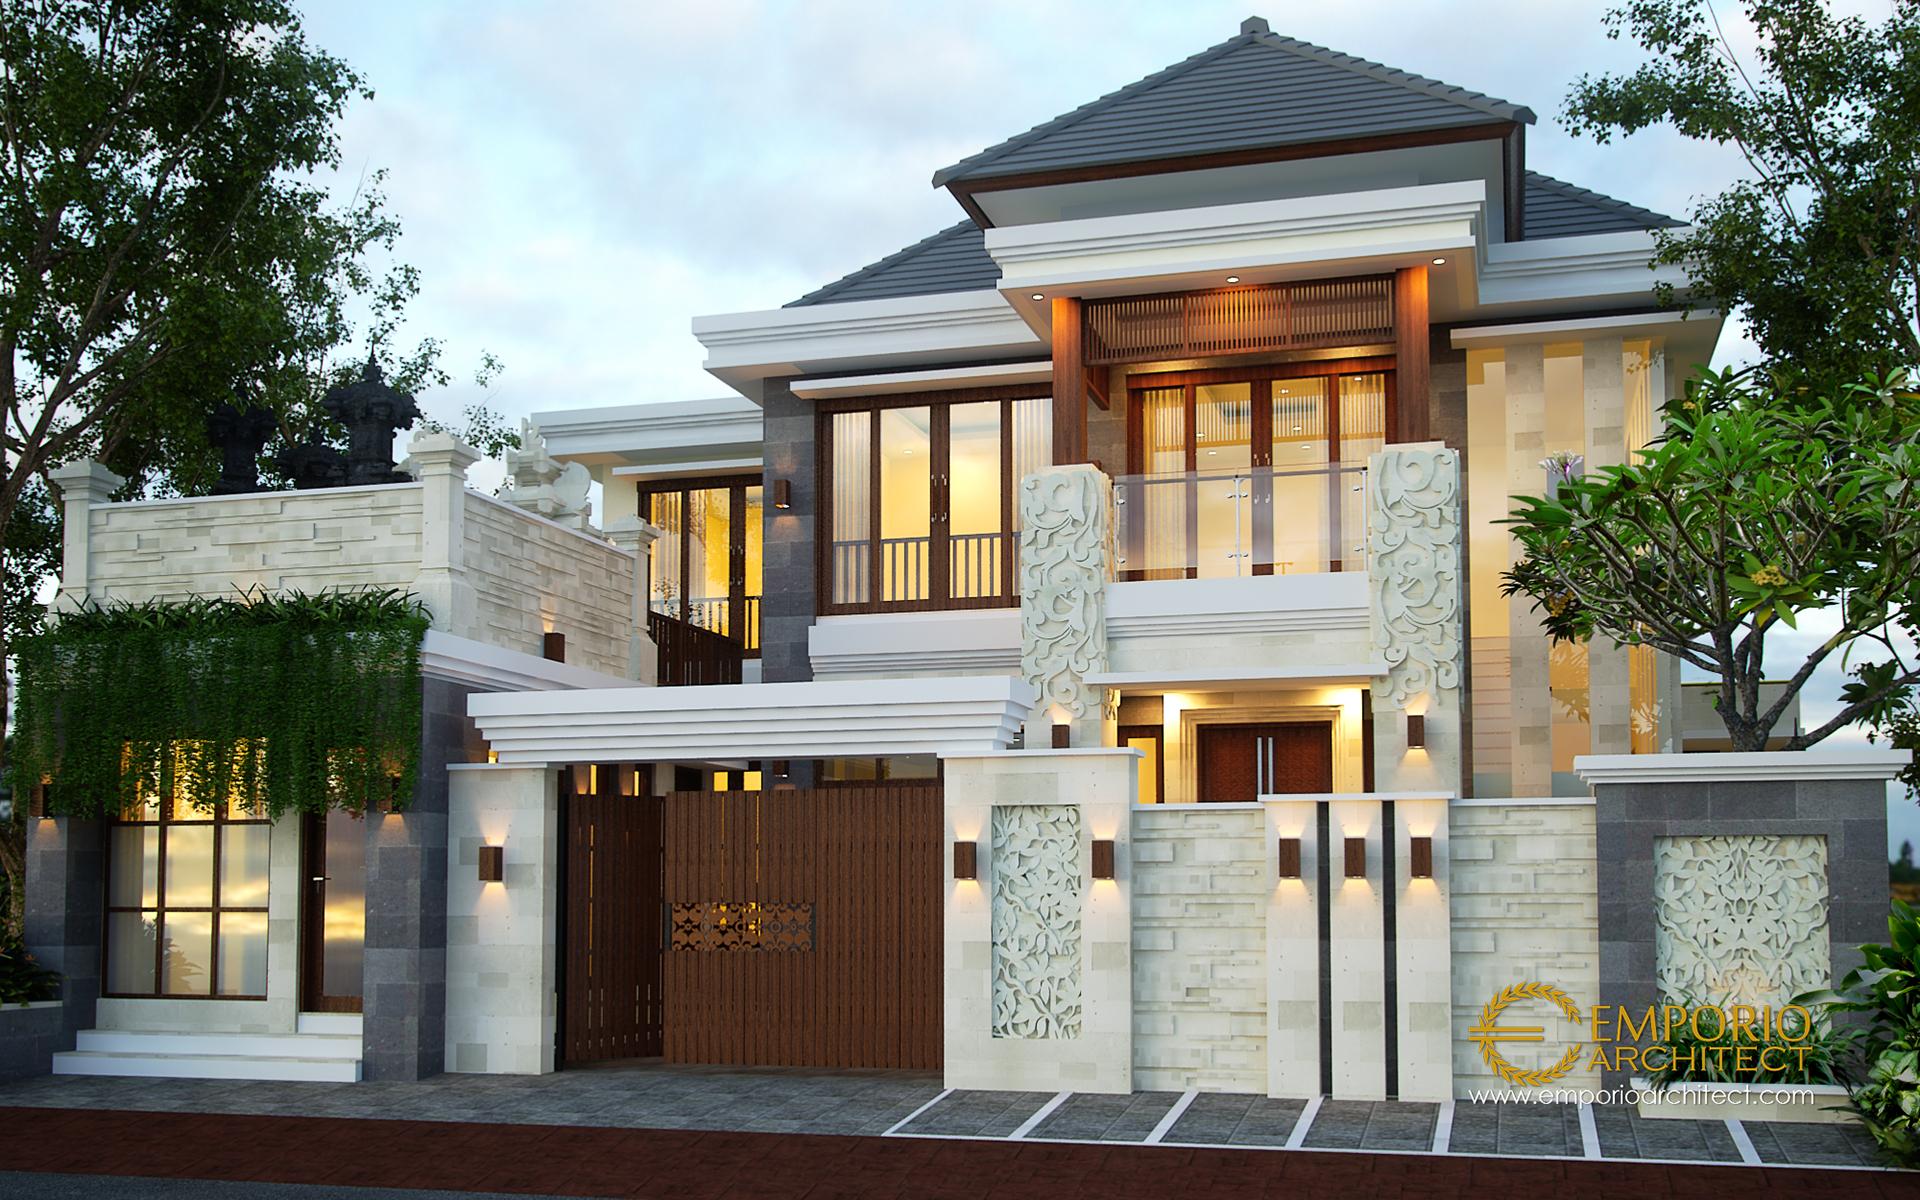 Desain Rumah Villa Bali 2 Lantai Ibu Citra Di Denpasar Bali